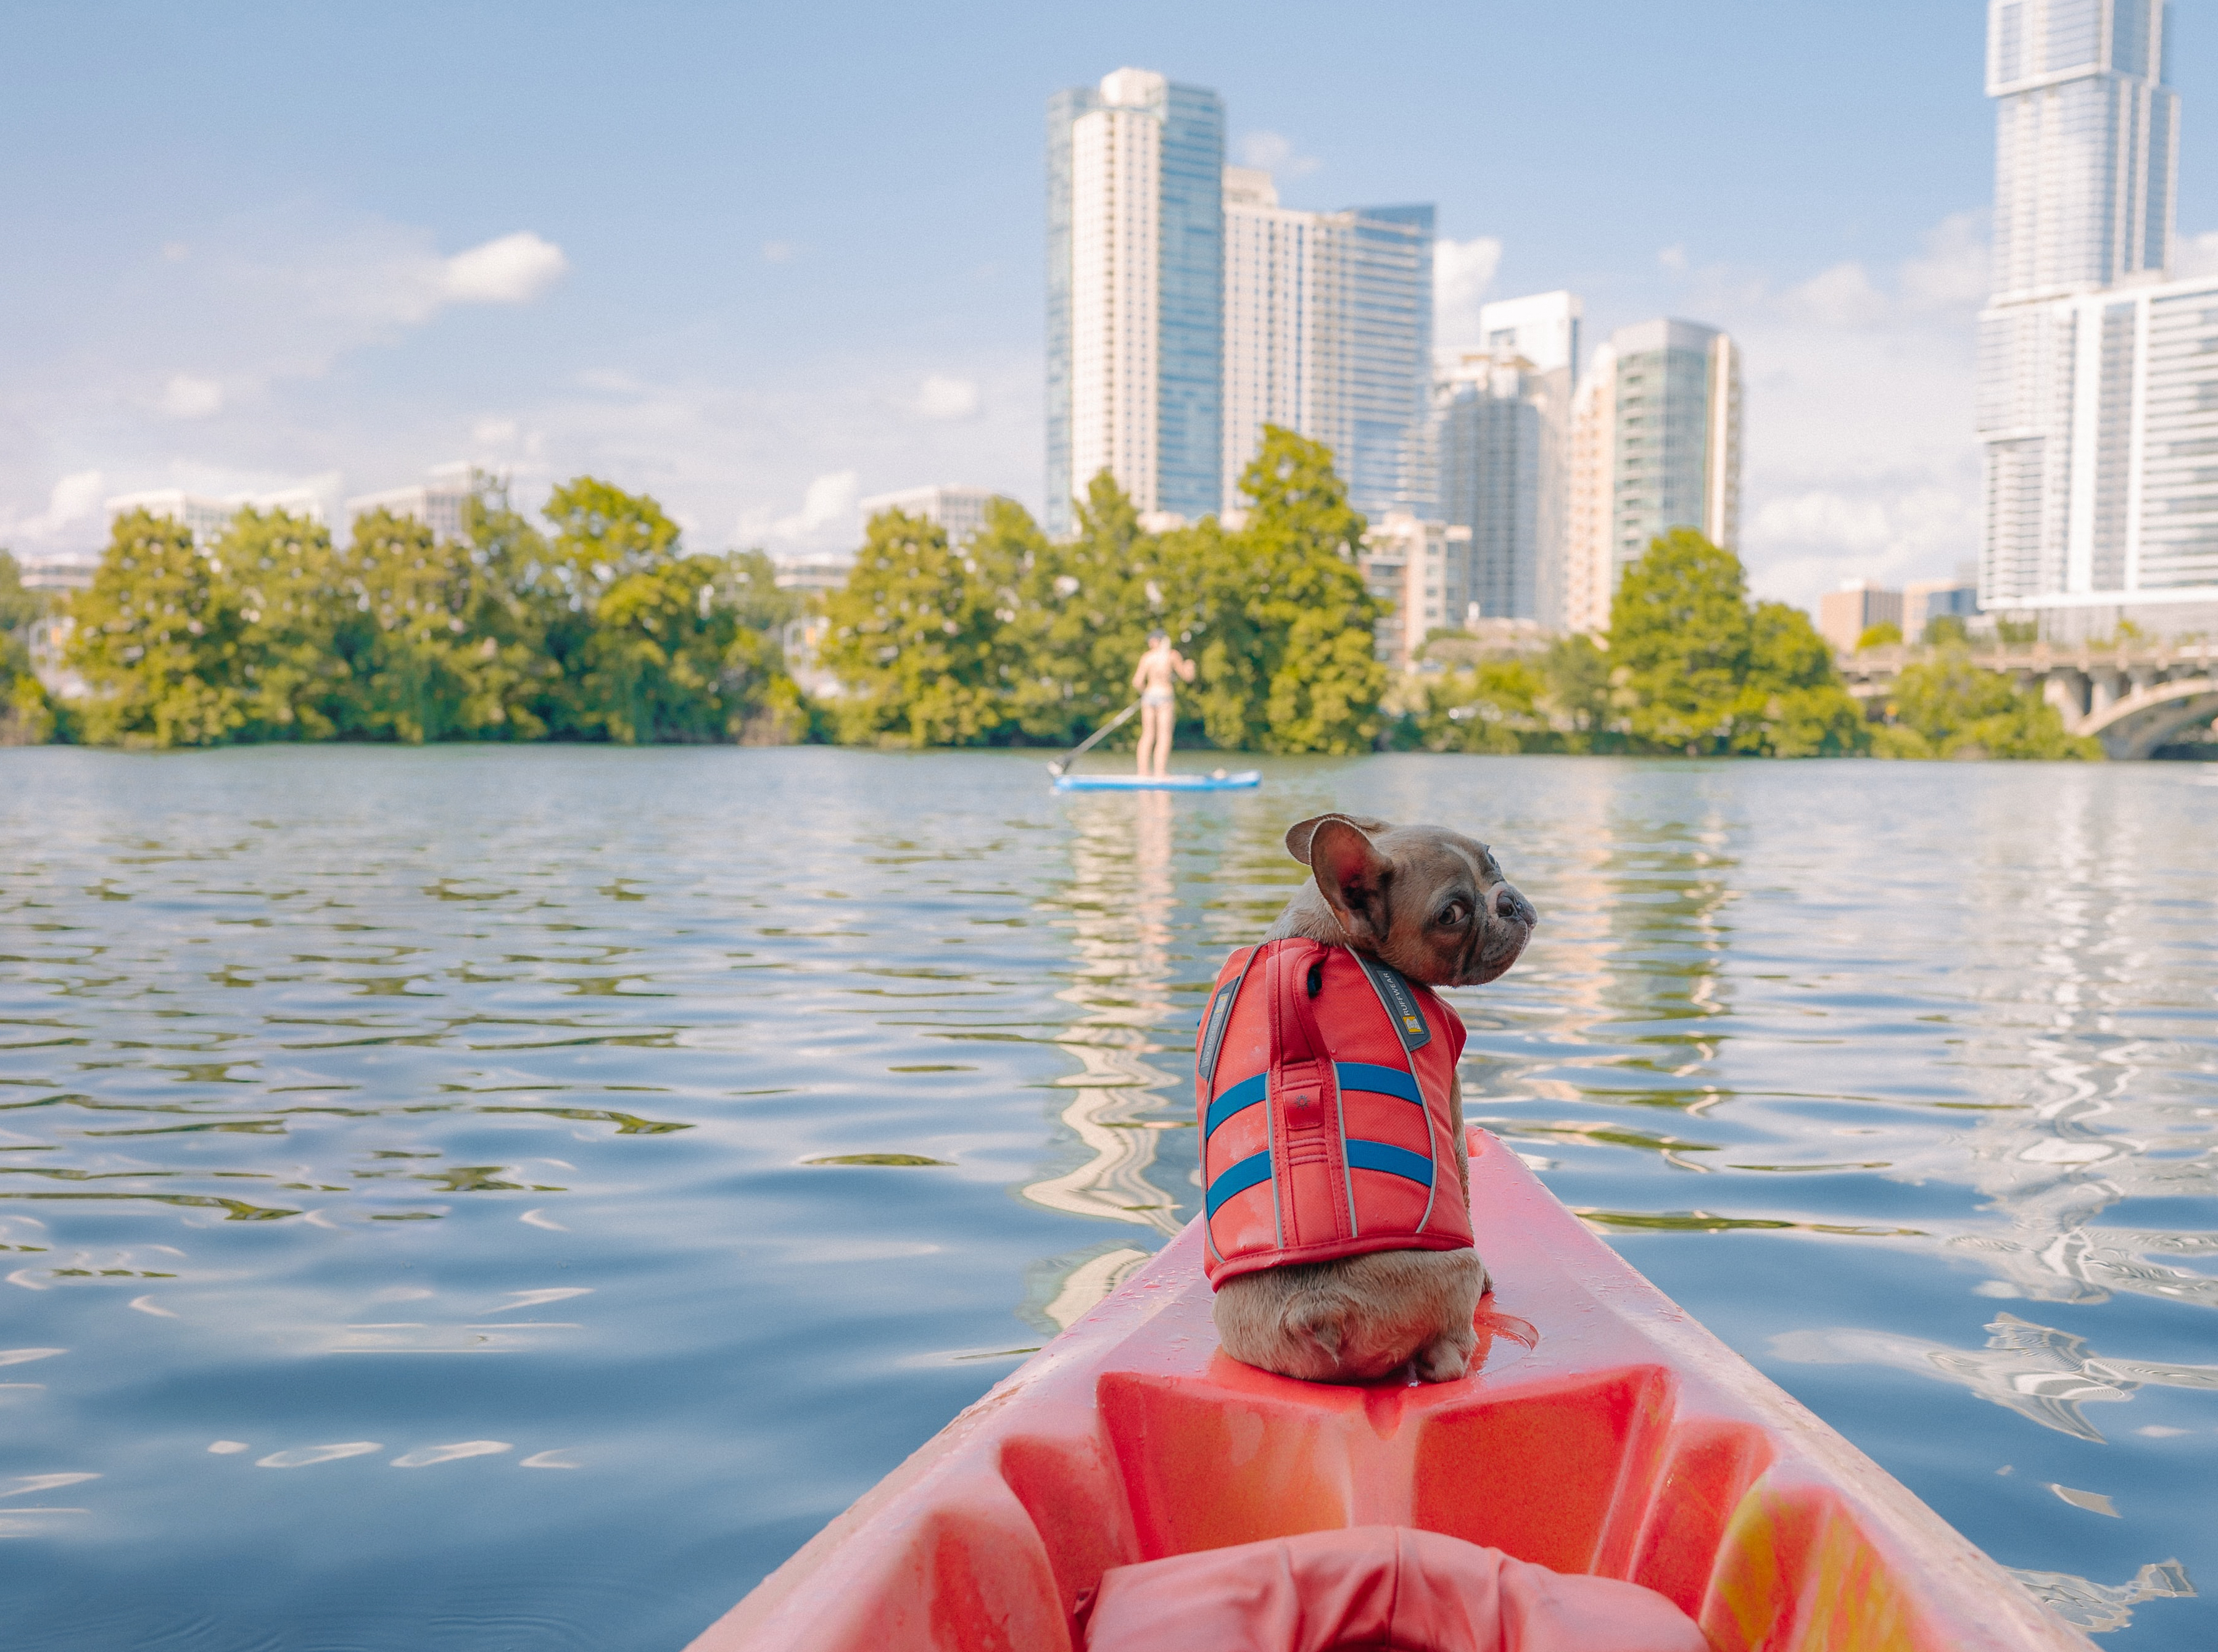 Kayak w doggy with city skyline in background.